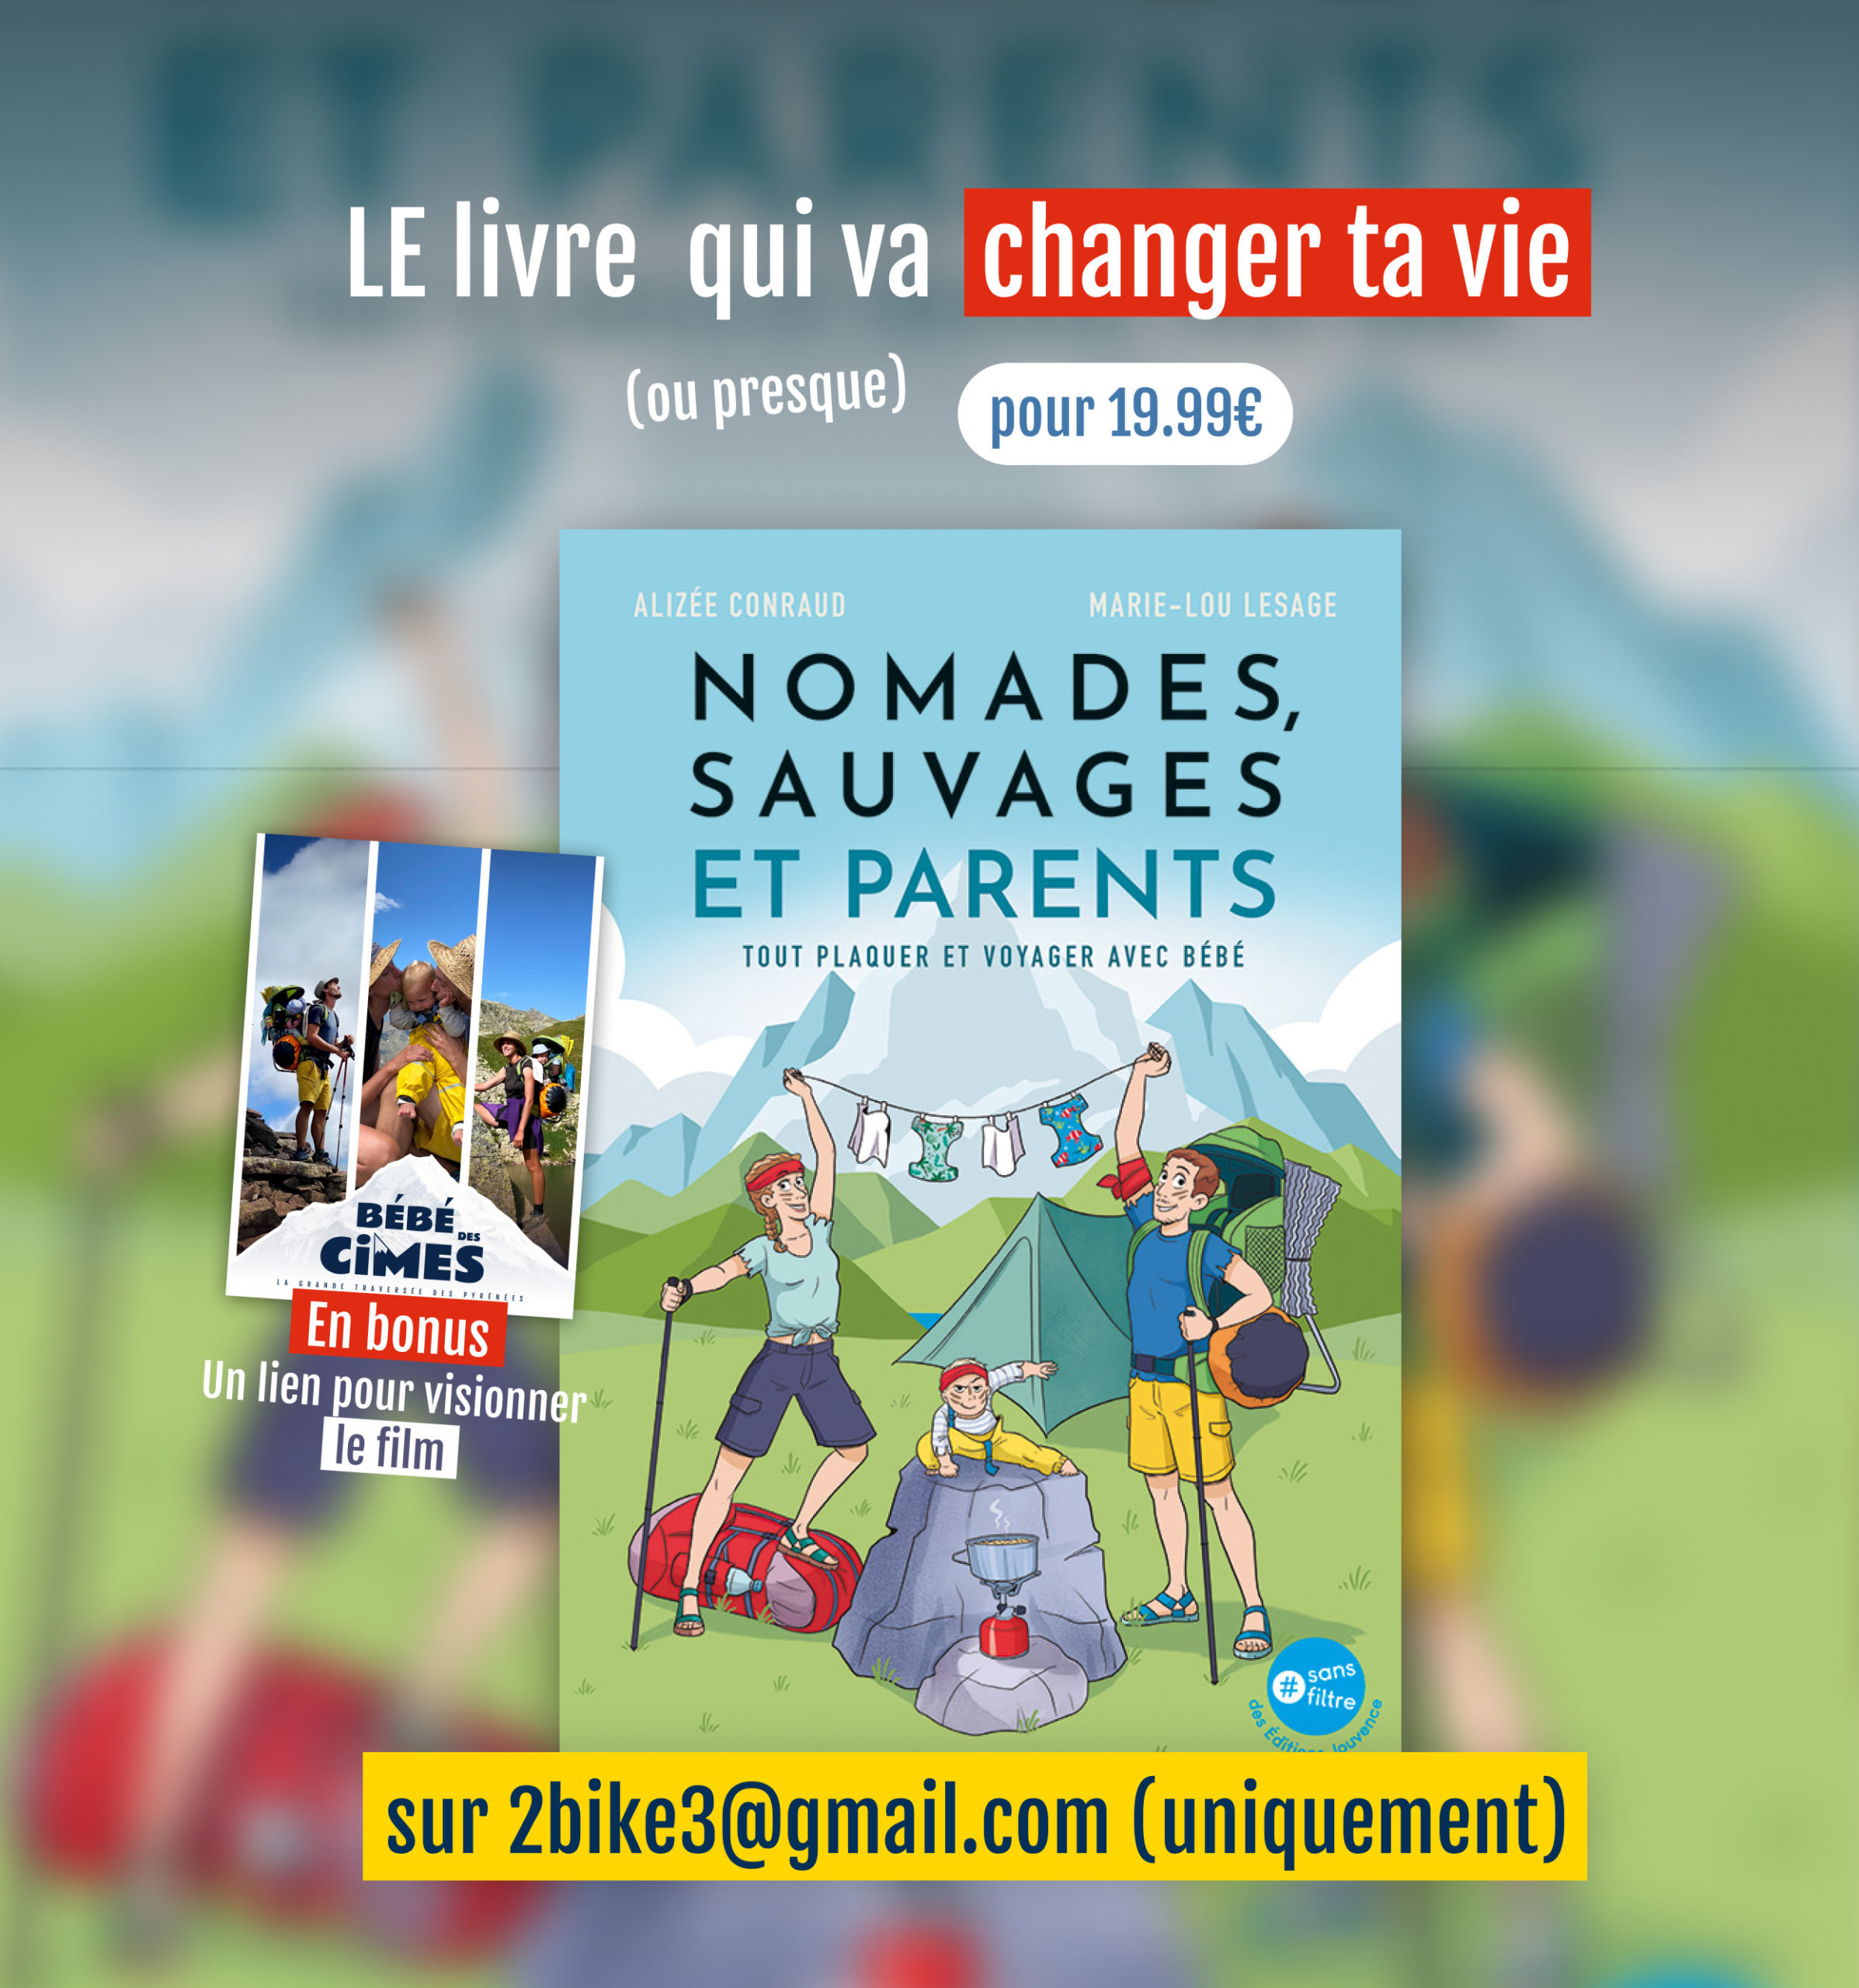 Le livre Nomades Sauvages et Parents de Alizée Conraud @2bike3 et Marie-Lou Lesage est disponible au prix de 19.99€ sur 2bike3@gmail.com en bonus un lien pour visionner le film bébé des cimes?